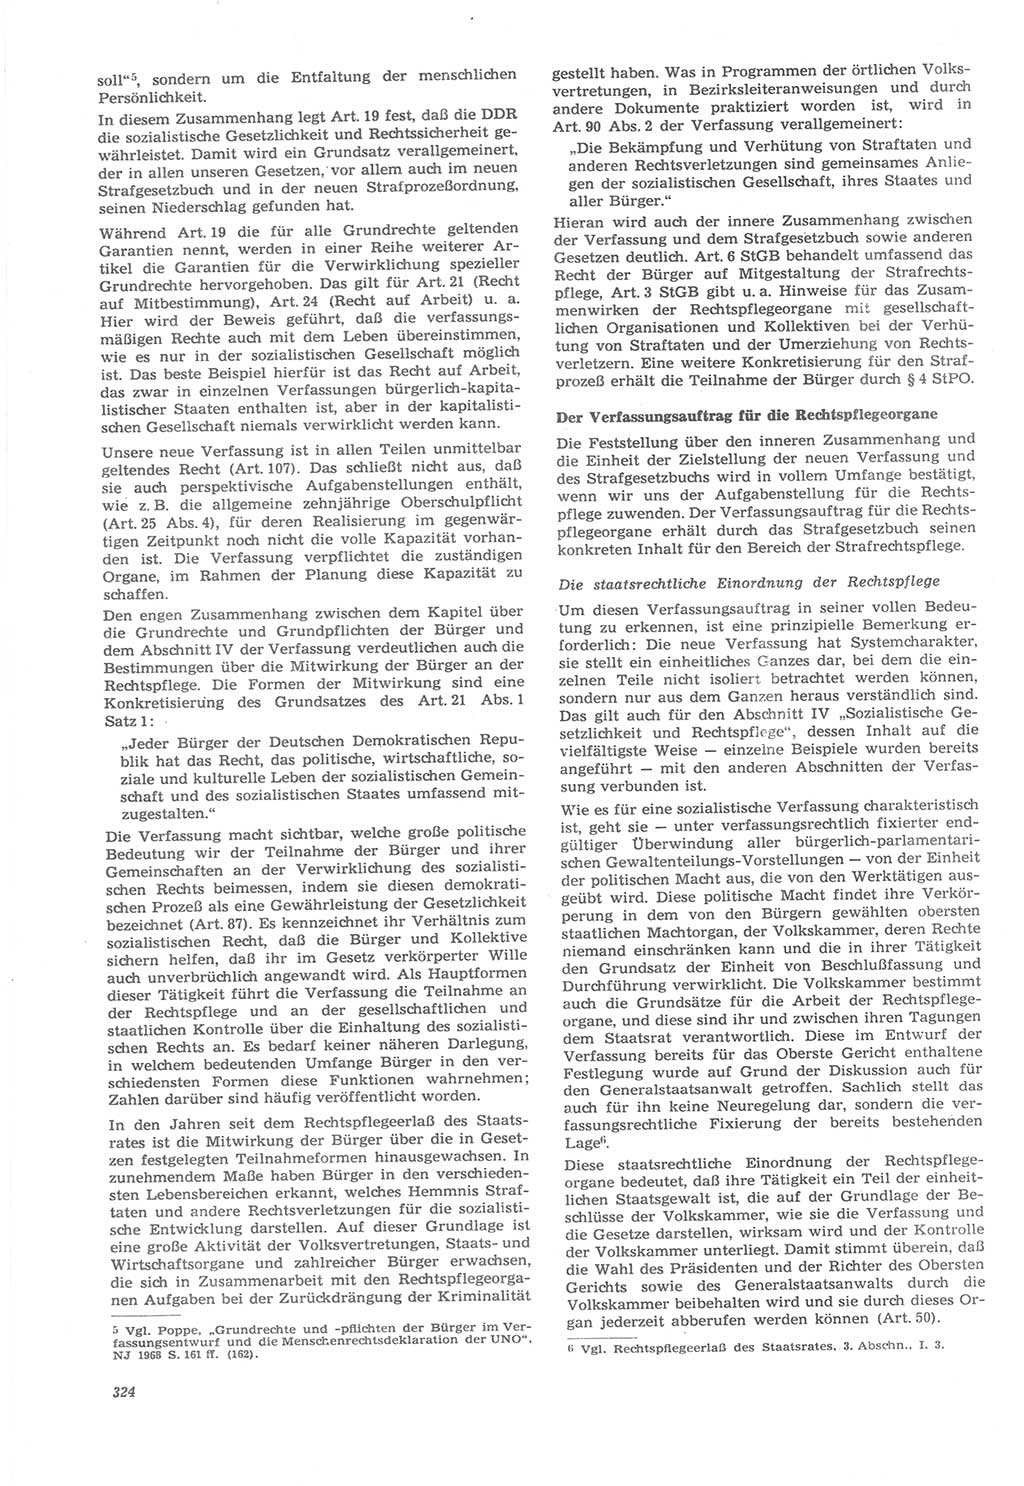 Neue Justiz (NJ), Zeitschrift für Recht und Rechtswissenschaft [Deutsche Demokratische Republik (DDR)], 22. Jahrgang 1968, Seite 324 (NJ DDR 1968, S. 324)